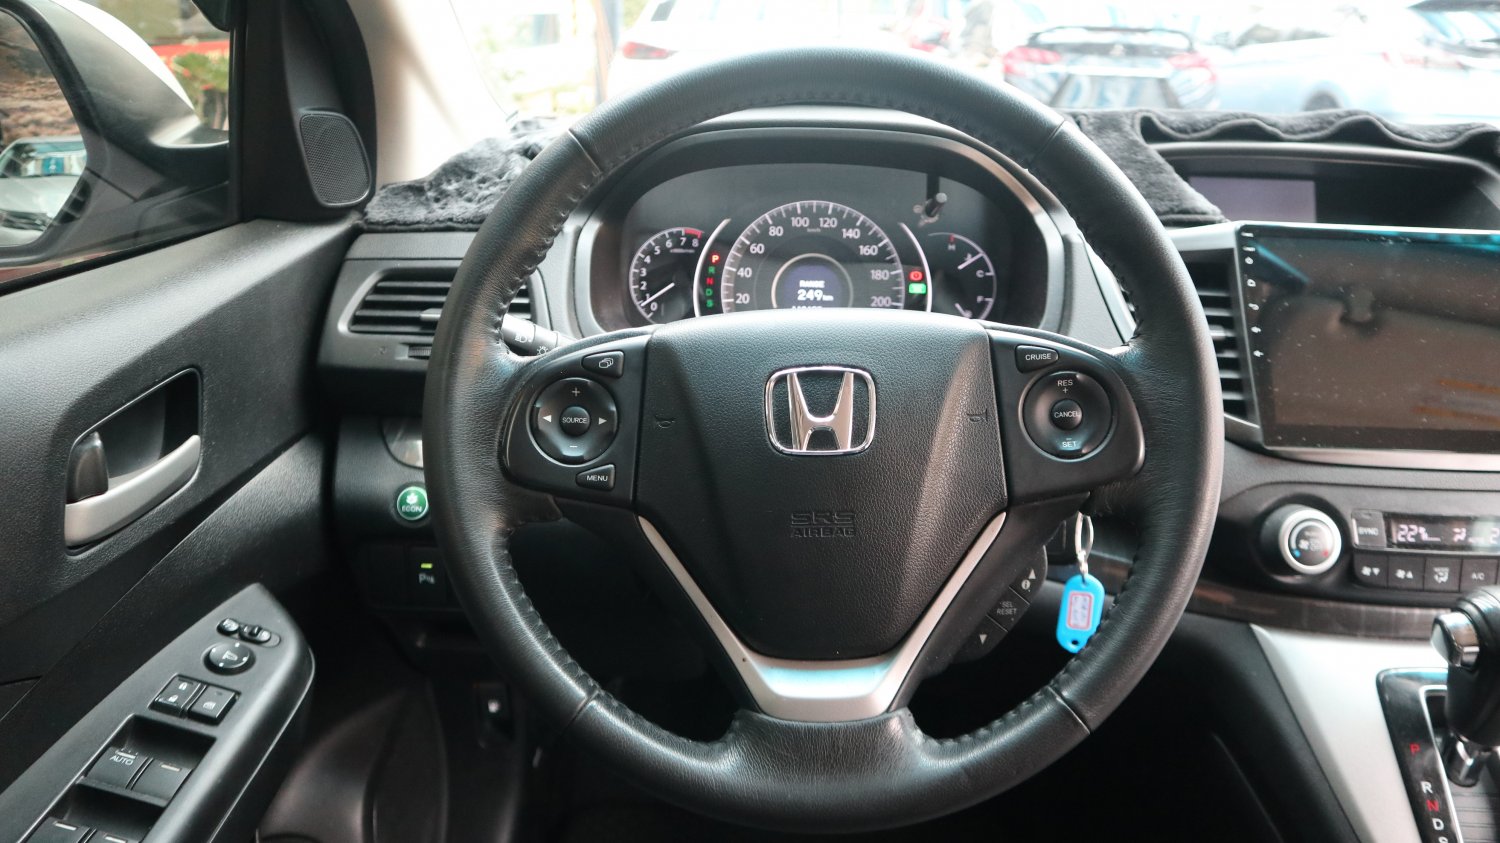 Honda 本田 ／ CR-V ／ 2015年 ／ 2015年Honda CRV 白色 本田中古車 ／ MG車庫(台南)